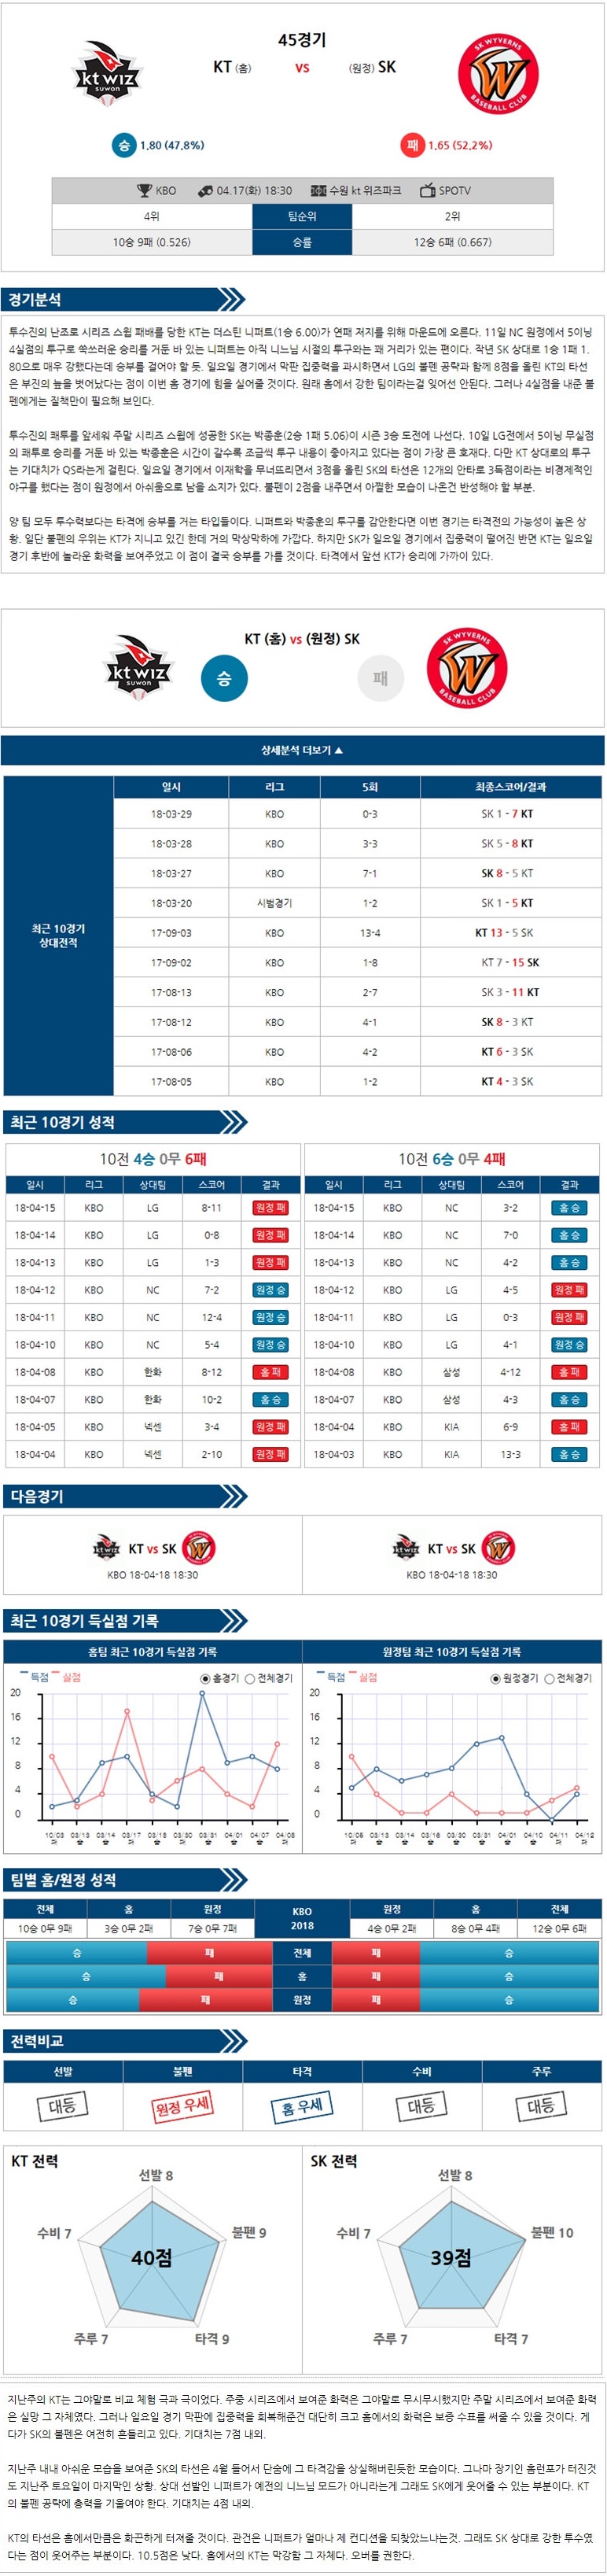 04-17 [KBO] 18:30 야구분석 KT vs SK